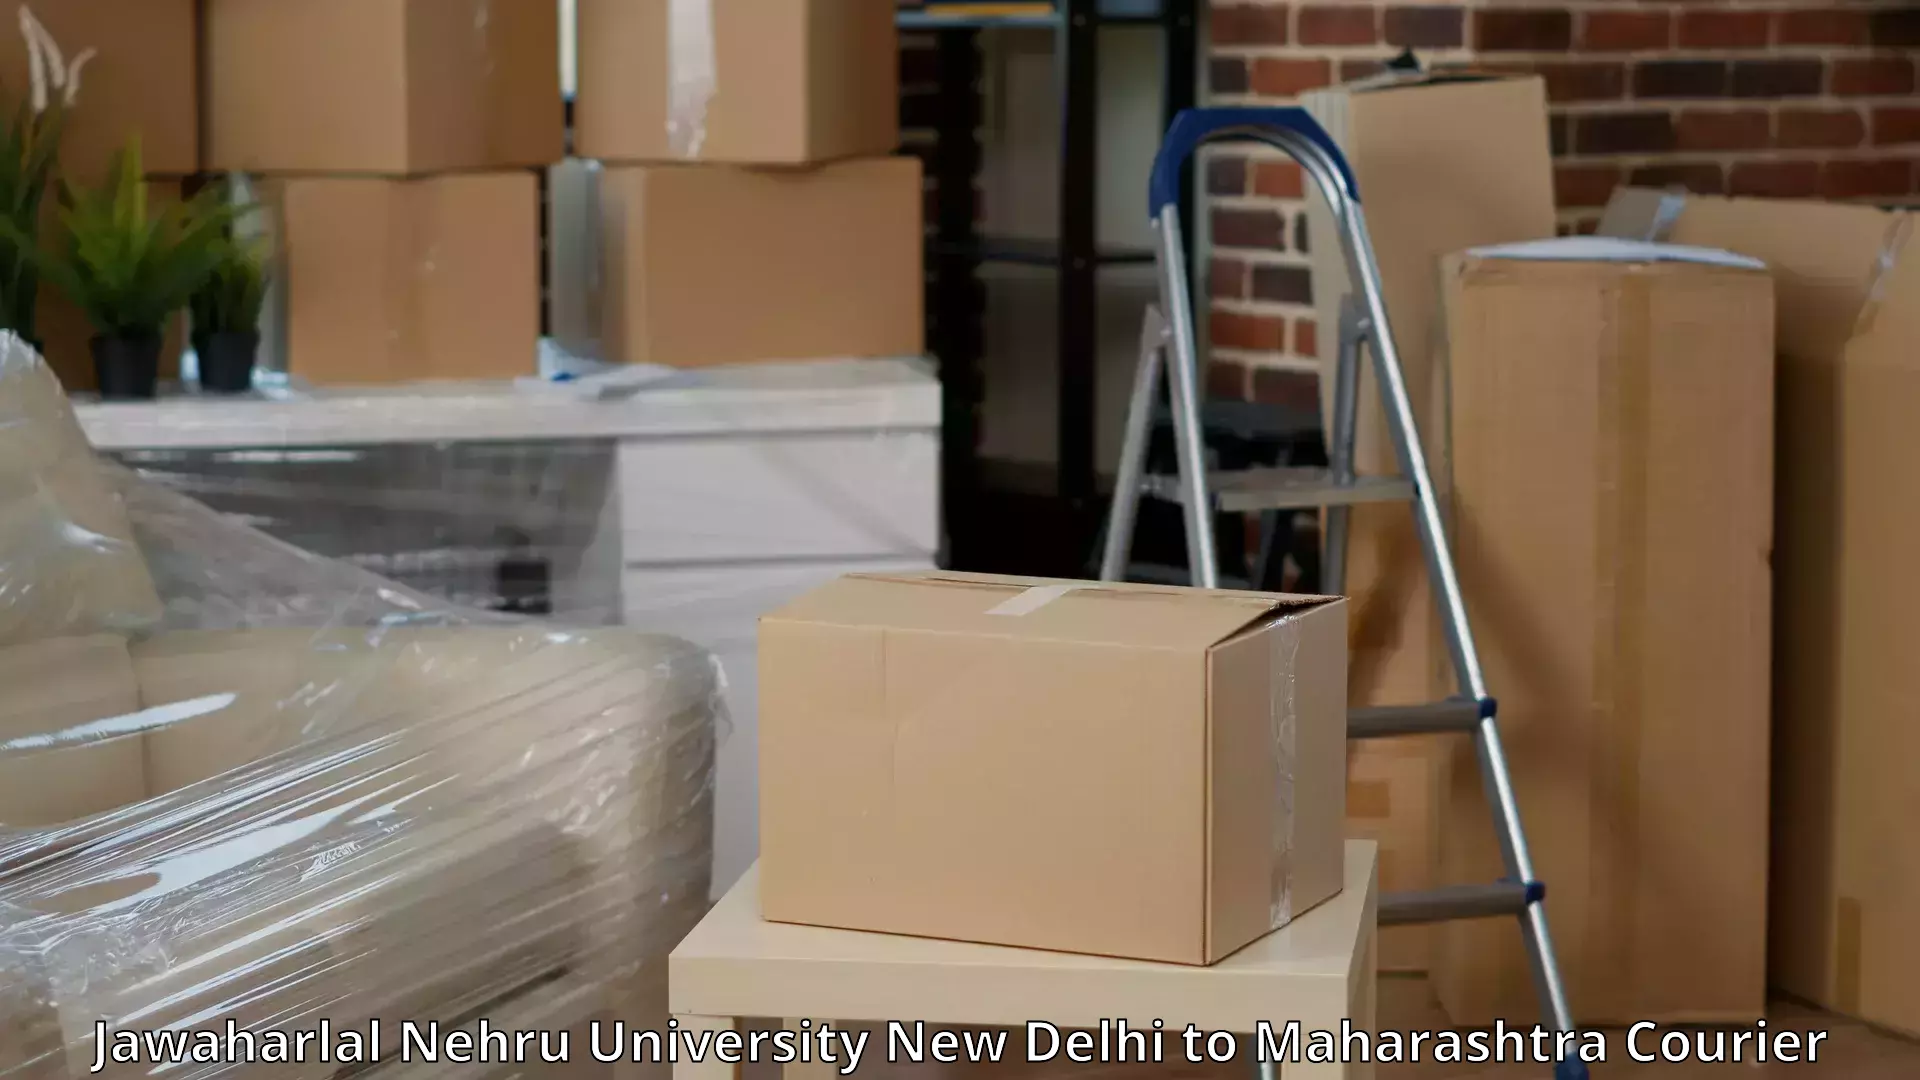 Expert goods movers Jawaharlal Nehru University New Delhi to Hinganghat